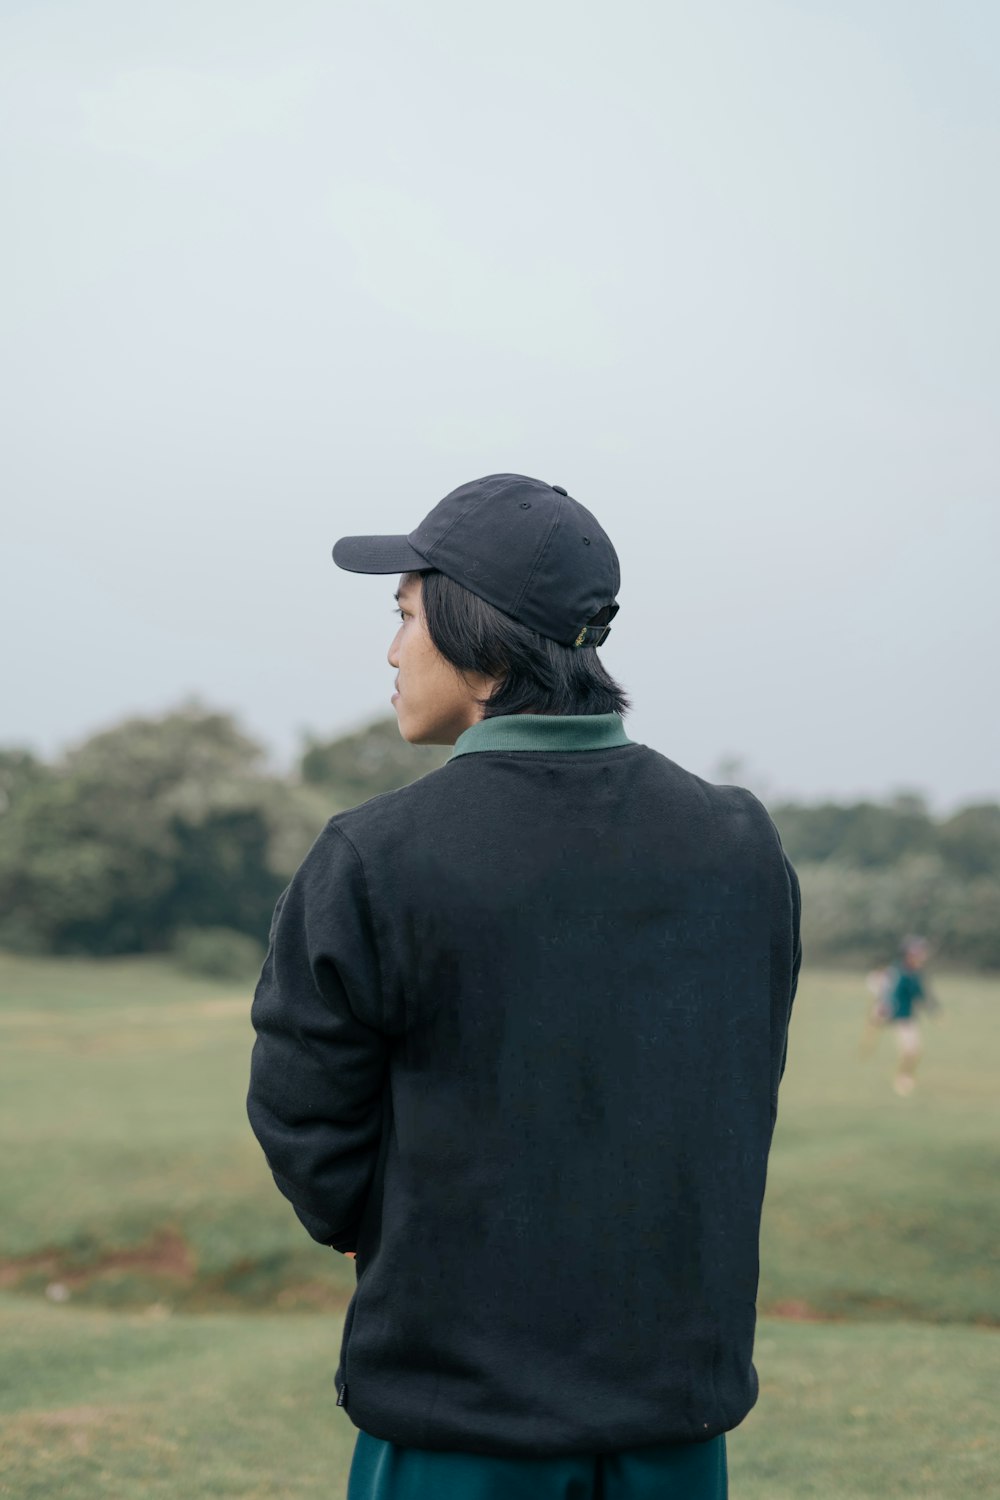 Una persona parada en un campo con una gorra de béisbol puesta